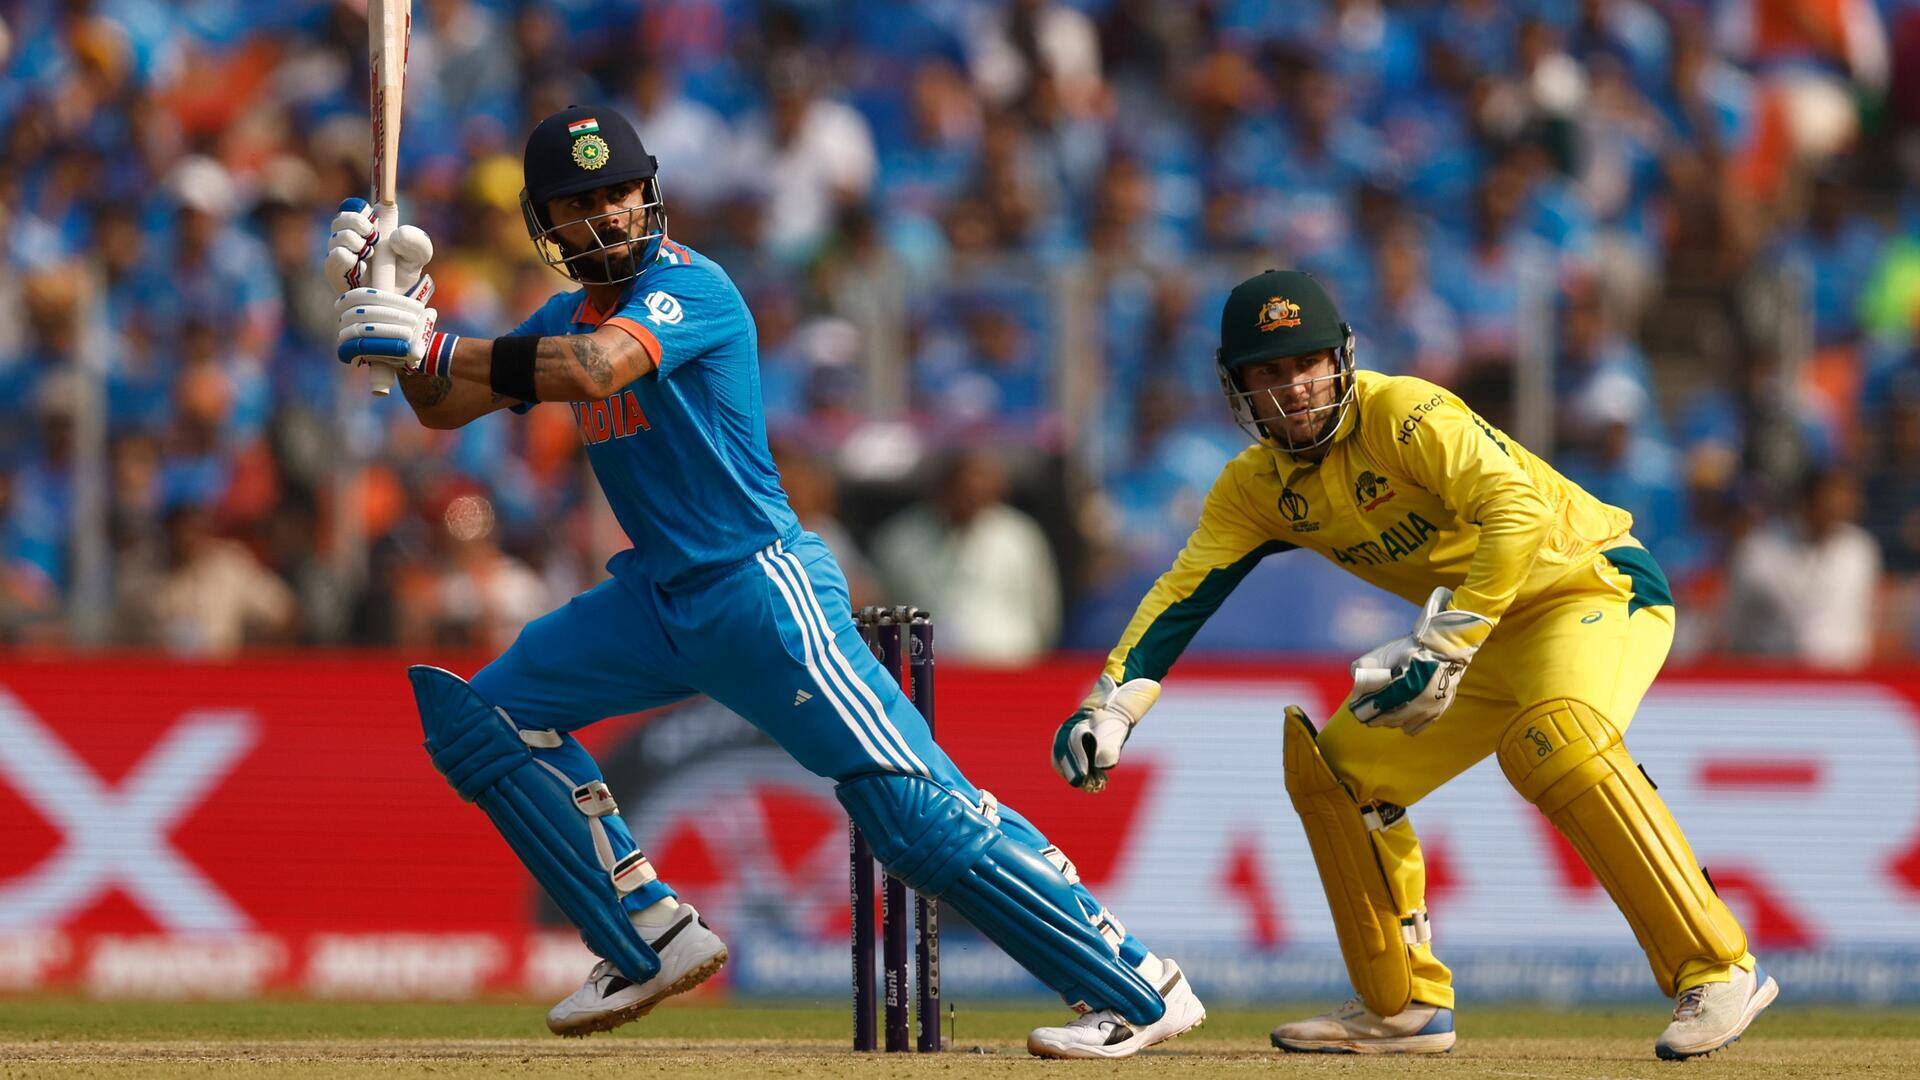 भारत बनाम ऑस्ट्रेलिया: विराट कोहली ने लगाया इस विश्व कप में छठा अर्धशतक, जानिए उनके आंकड़े 